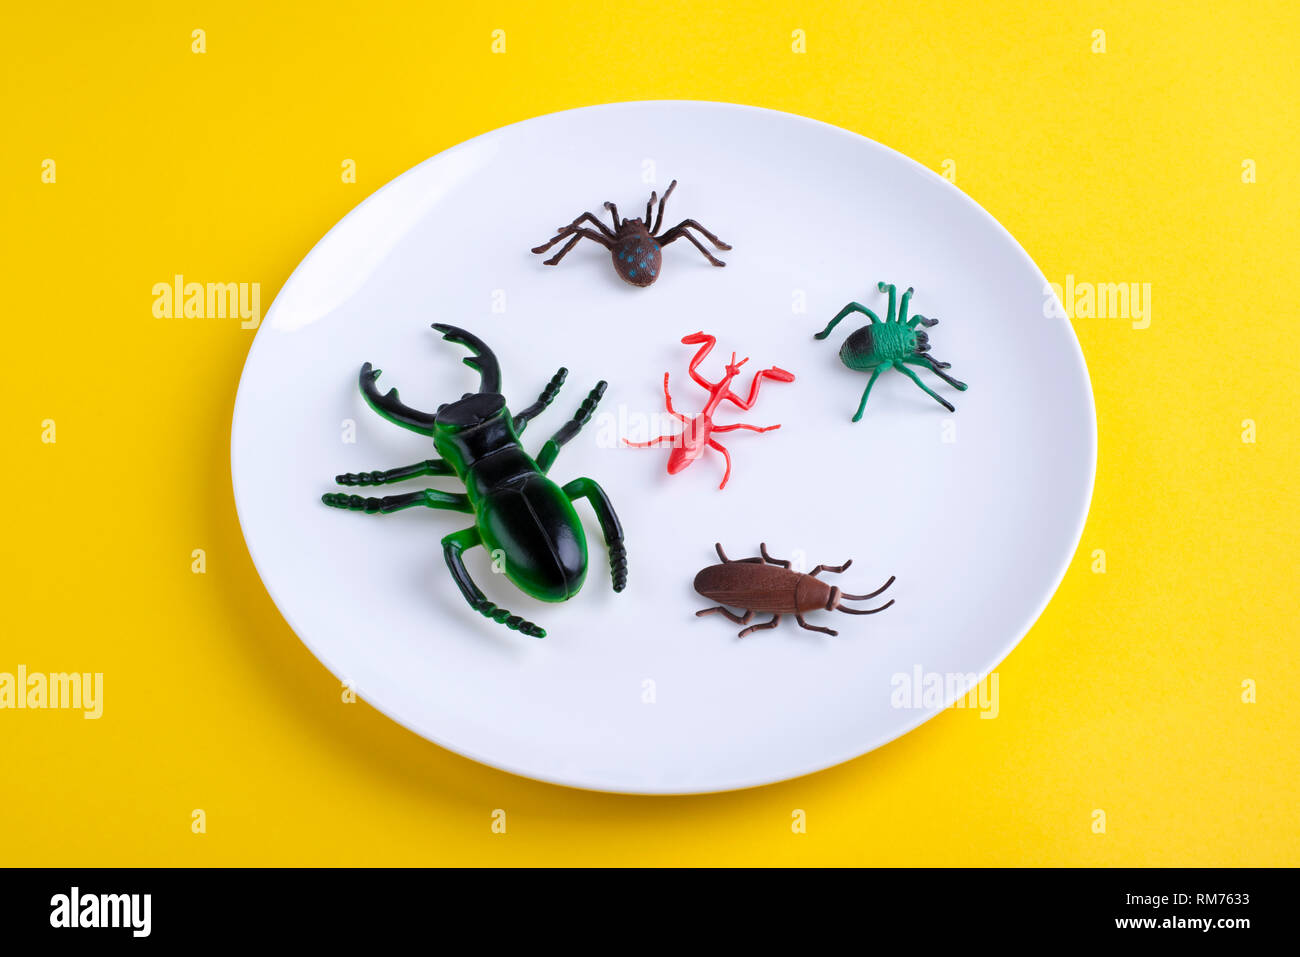 Satz von Insekten auf weiße Platte. Stockfoto